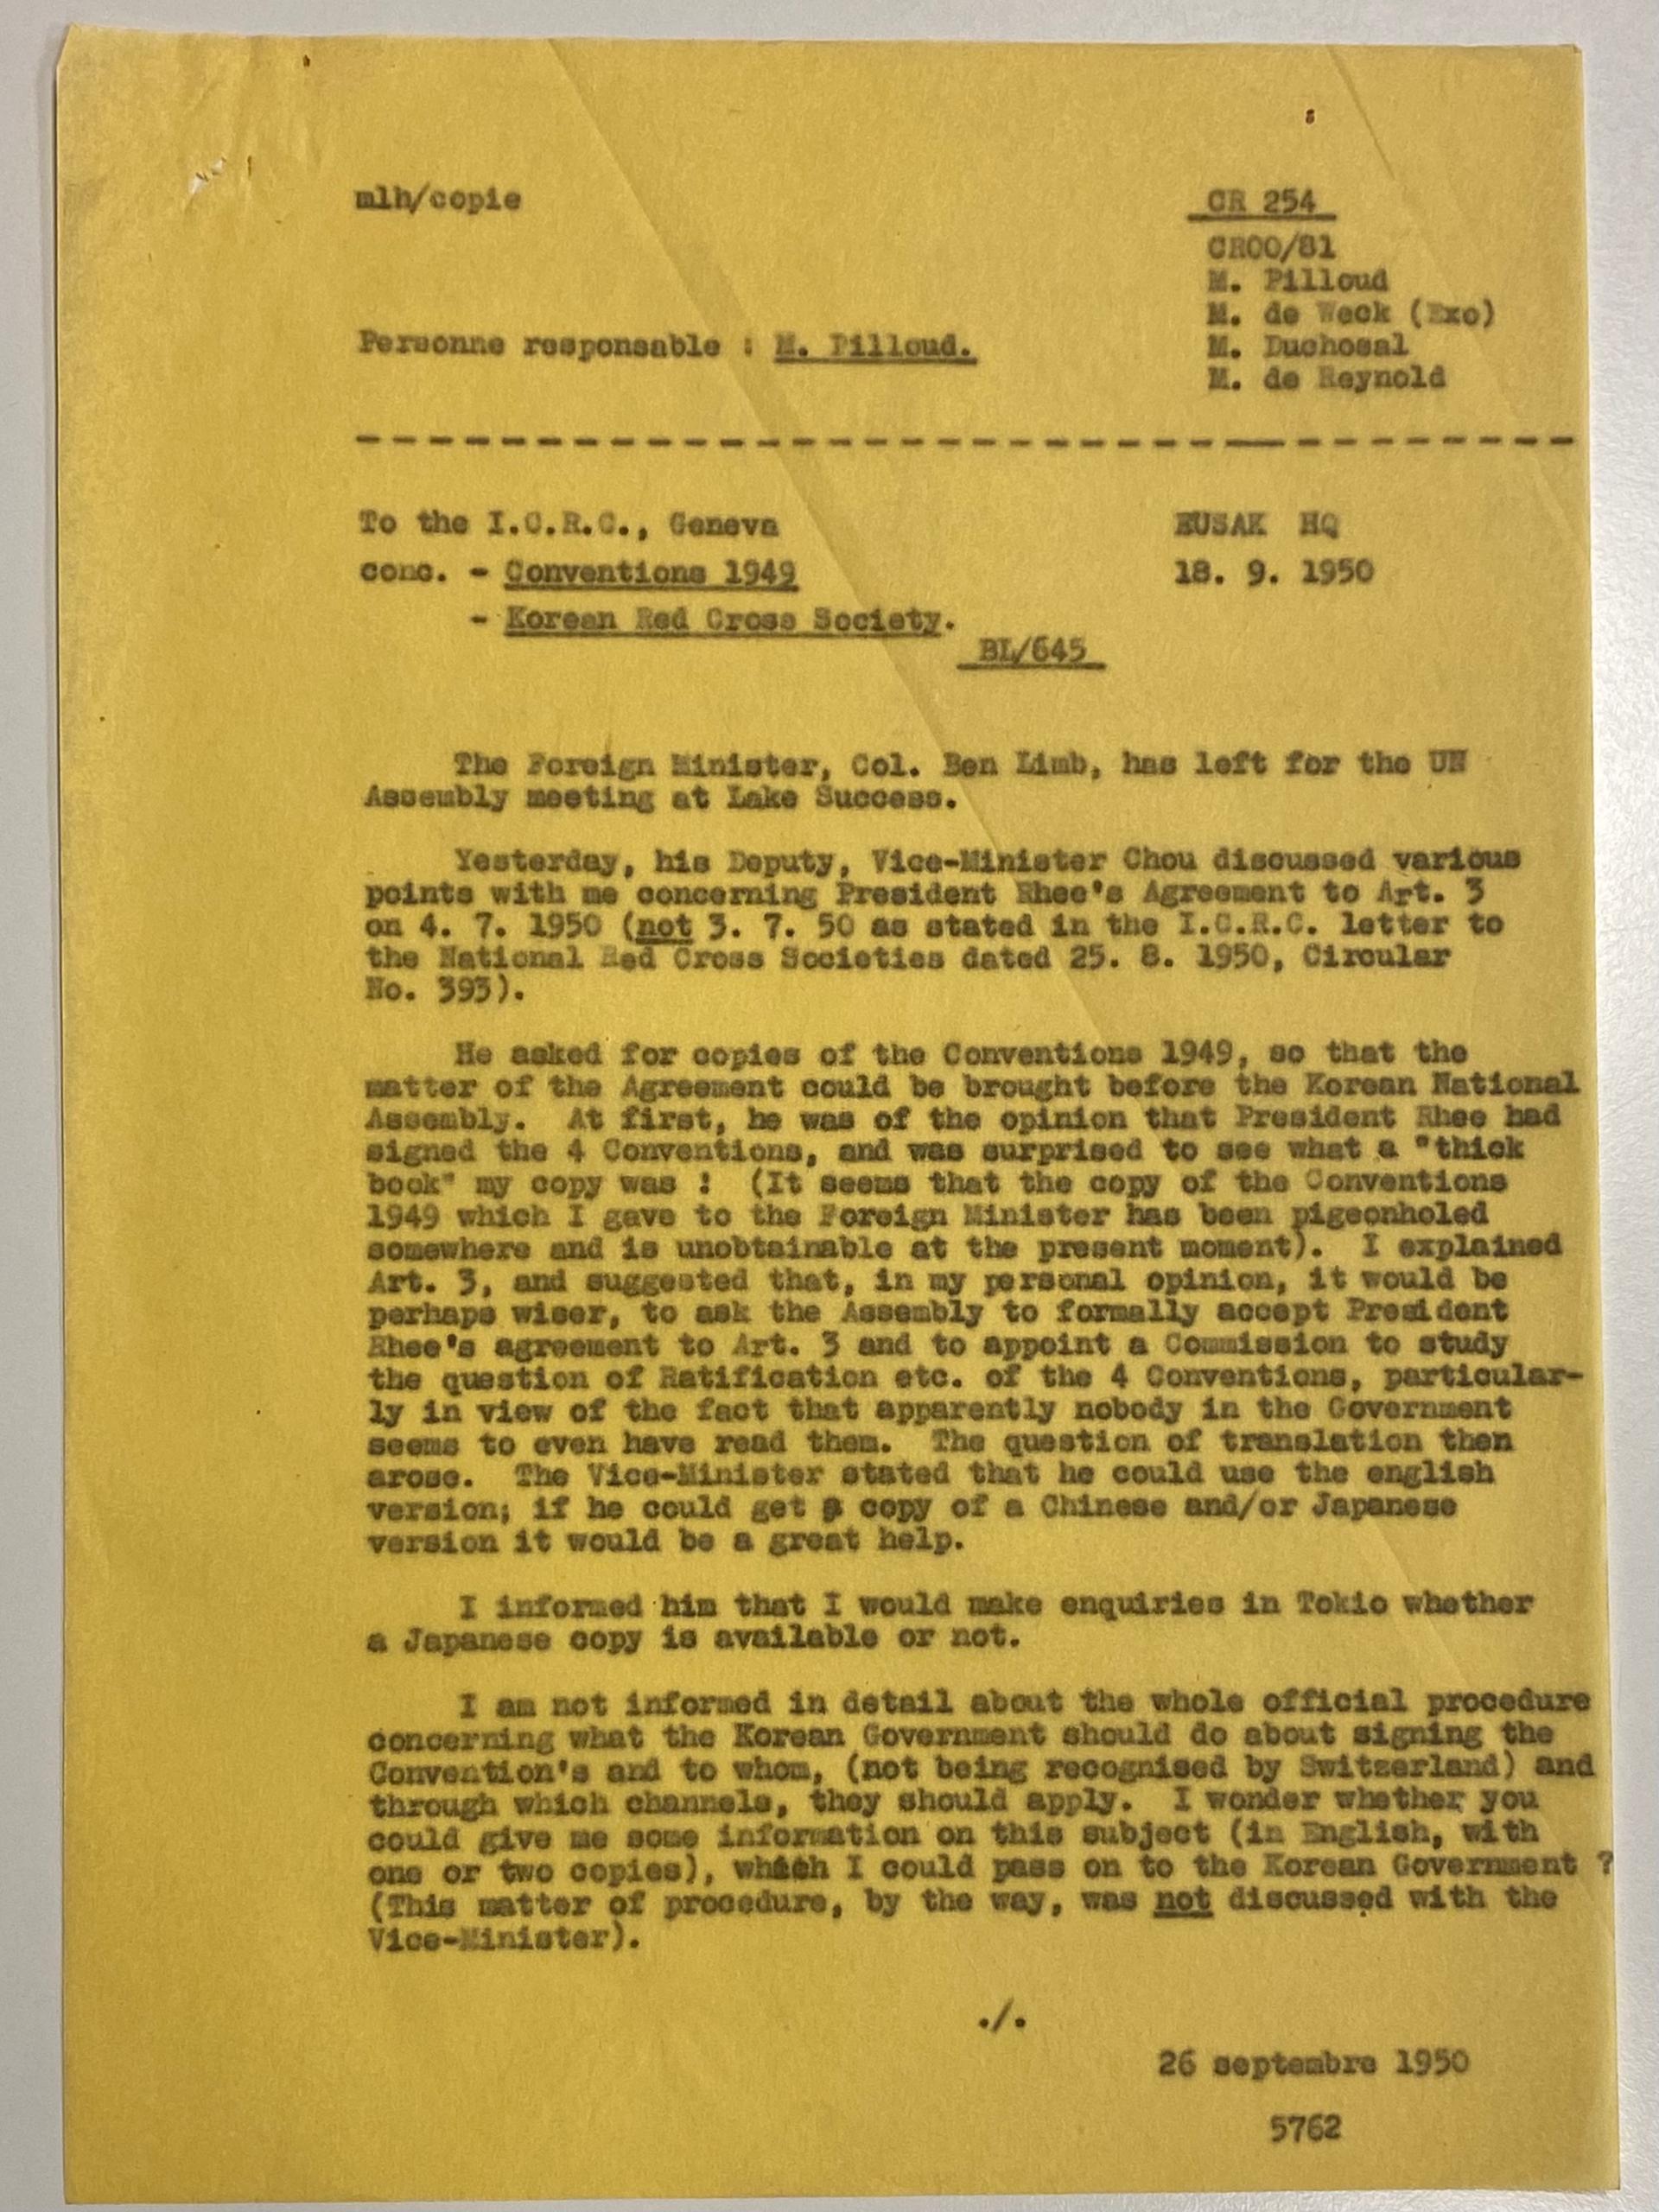 「私が（韓国の）外務大臣に渡した1949年の条約のコピーは、どこかにしまい込まれたようだ」と、ビエリは1950年9月18日の報告書で述べている